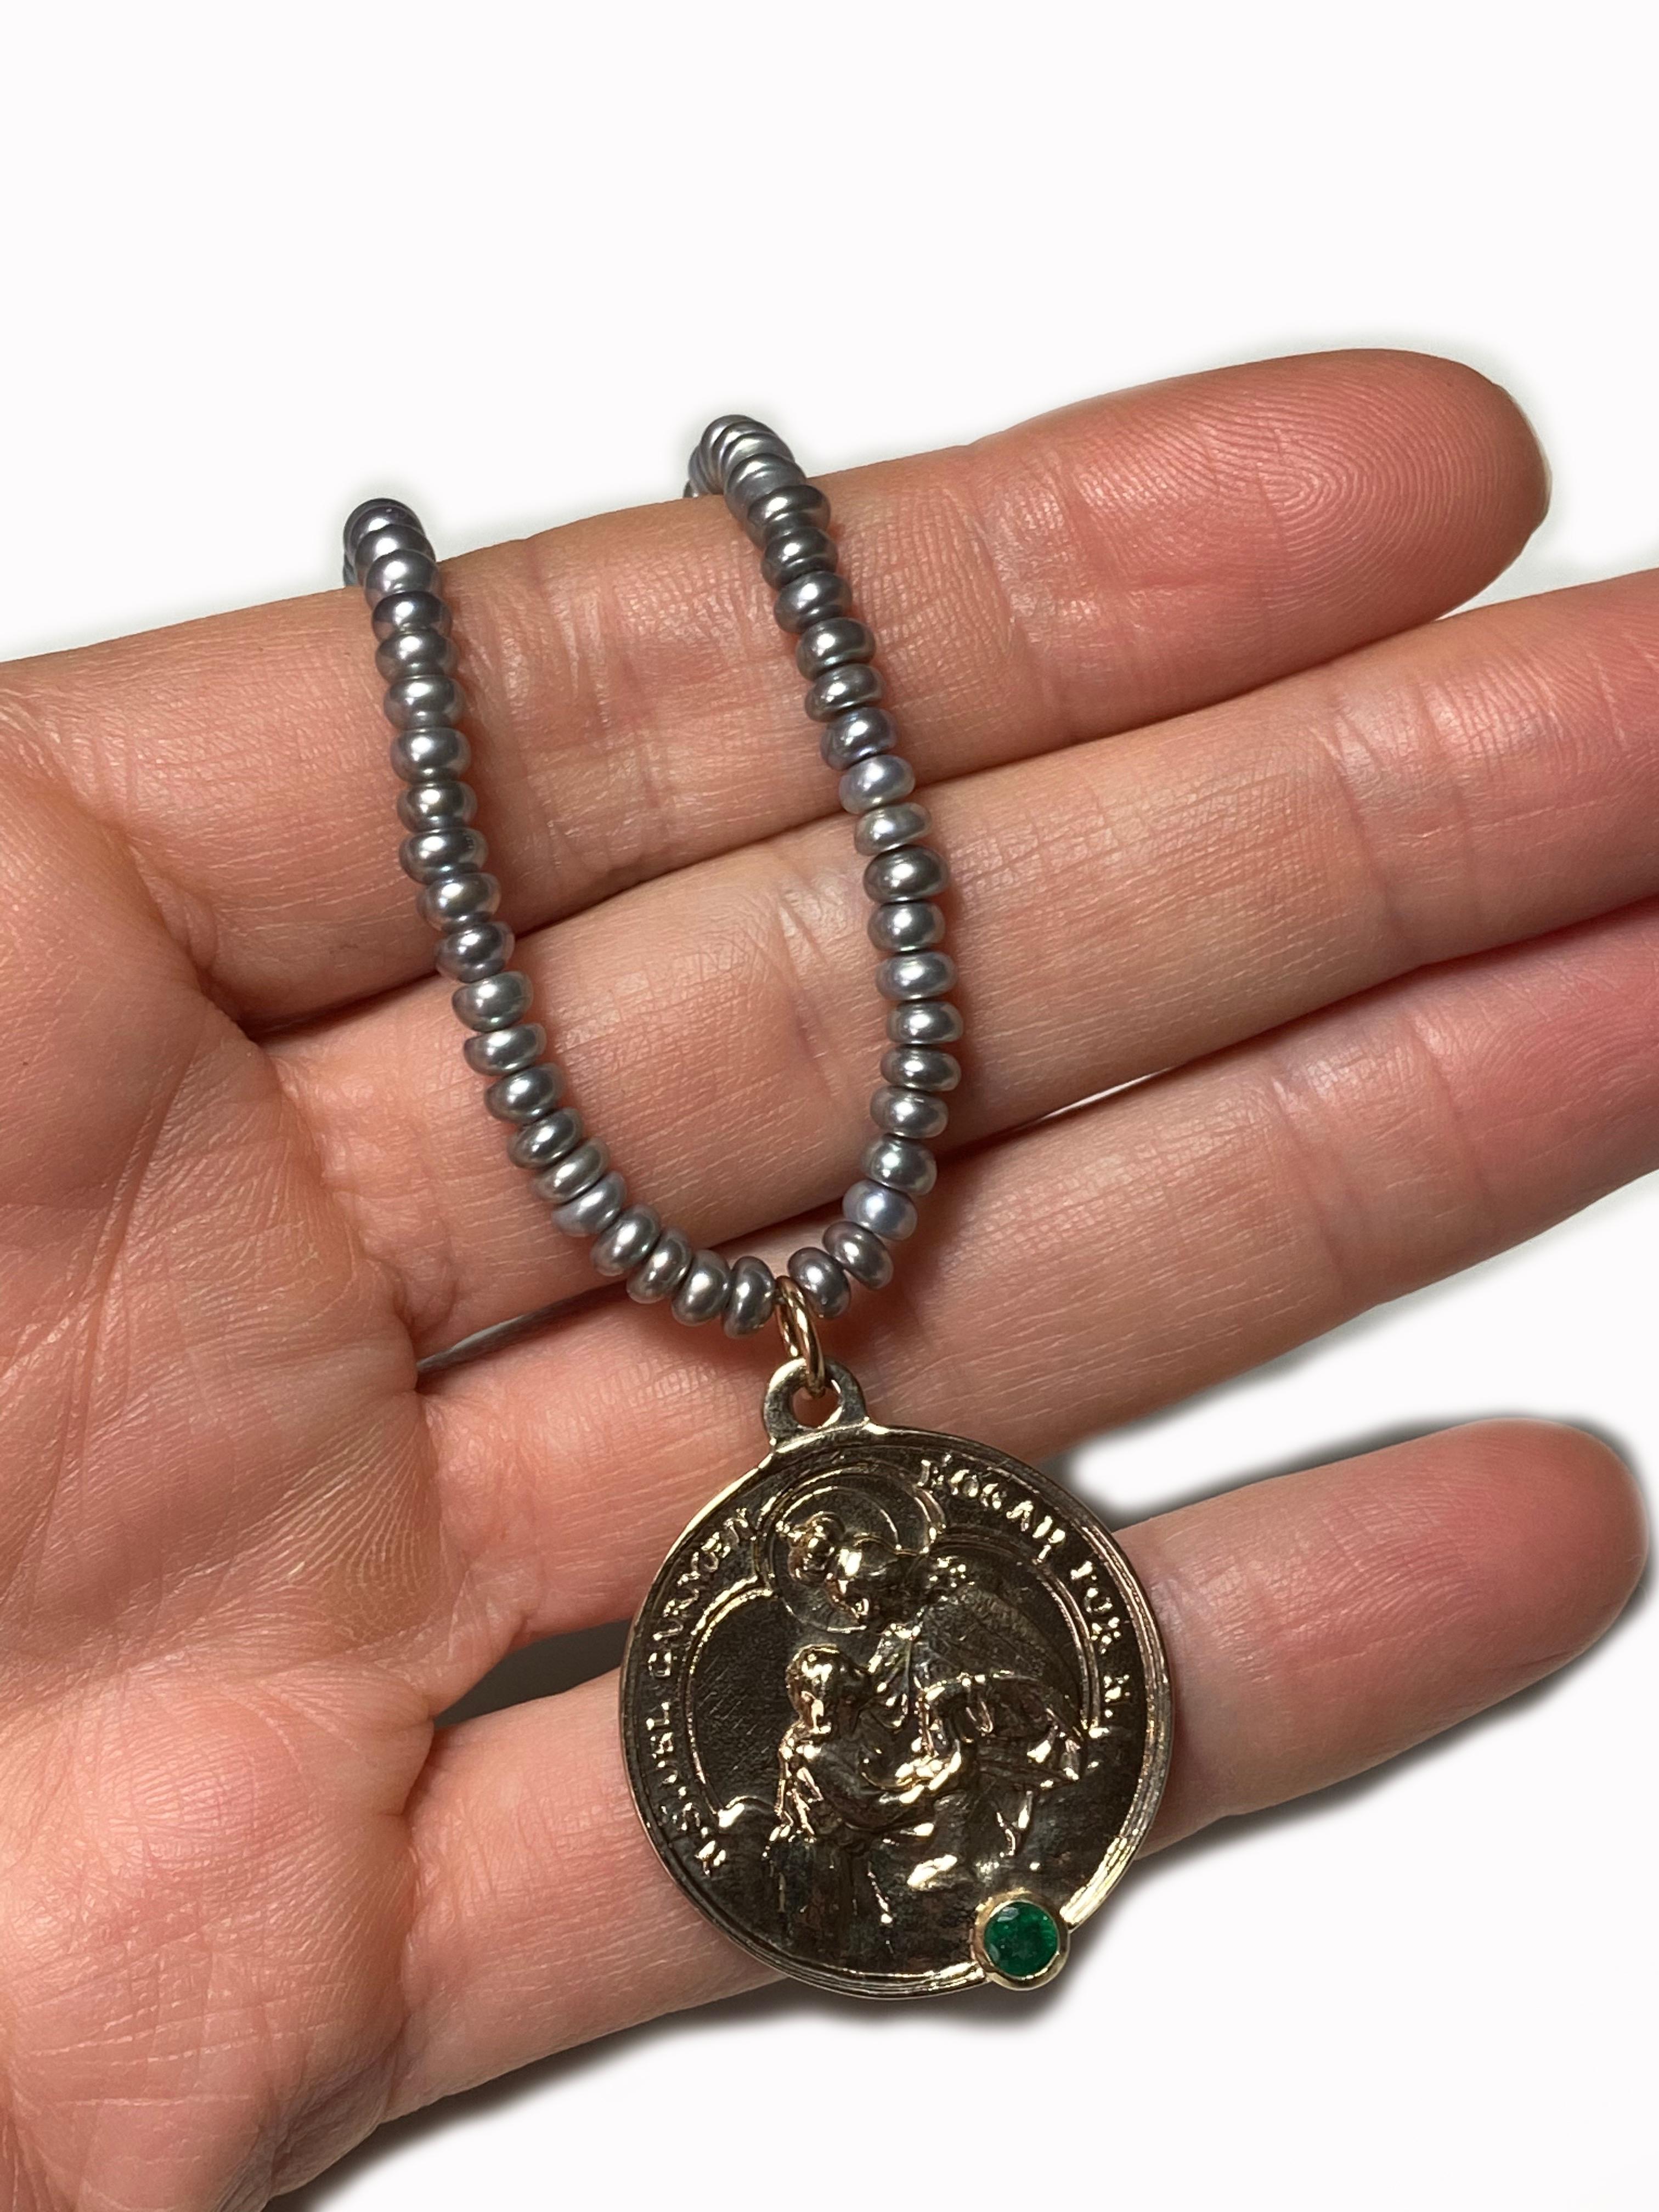 Smaragd Jungfrau Maria Bronze Grau Silber Süßwasser Perlenkette J DAUPHIN

Exklusives Stück mit einem Anhänger der Jungfrau Maria und einem Smaragd, der in einer Goldzacke auf einem Bronzeanhänger gefasst ist. Die Perlenkette ist 18' lang, kann aber